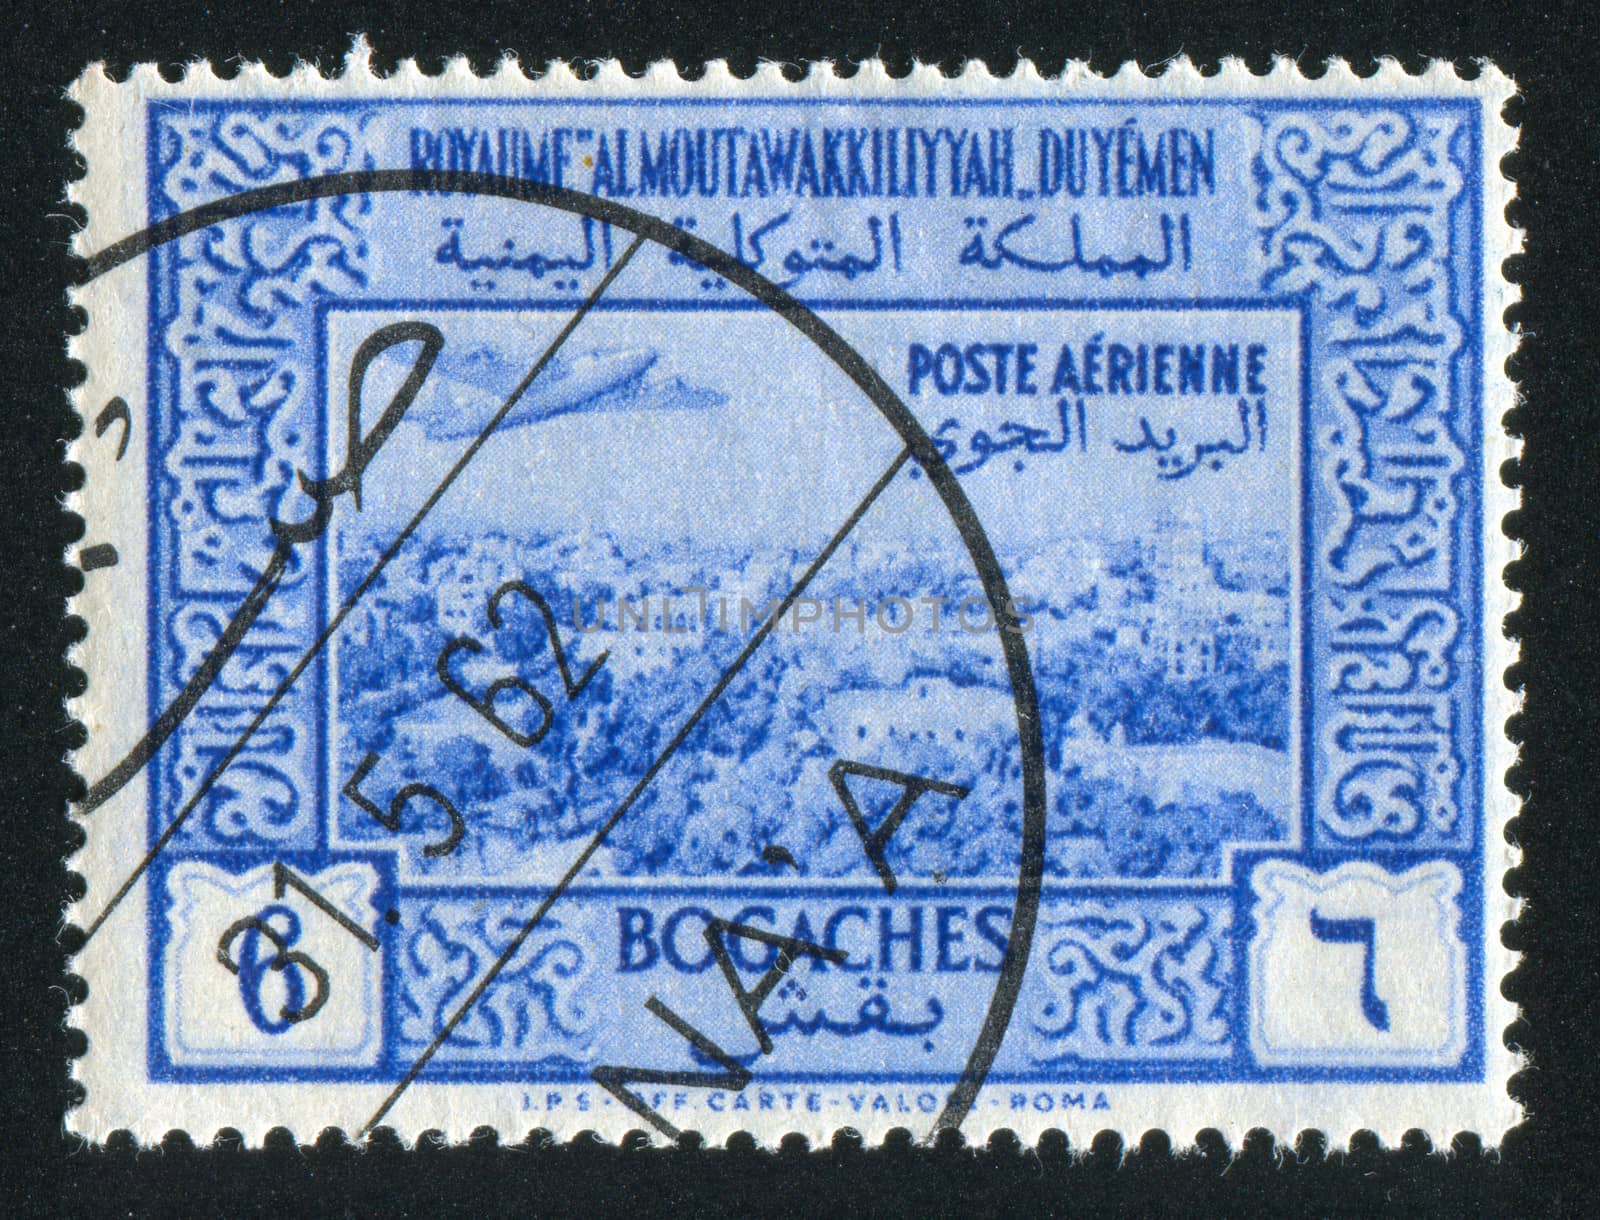 YEMEN - CIRCA 1972: stamp printed by Yemen, shows Airplane over Sana, circa 1972